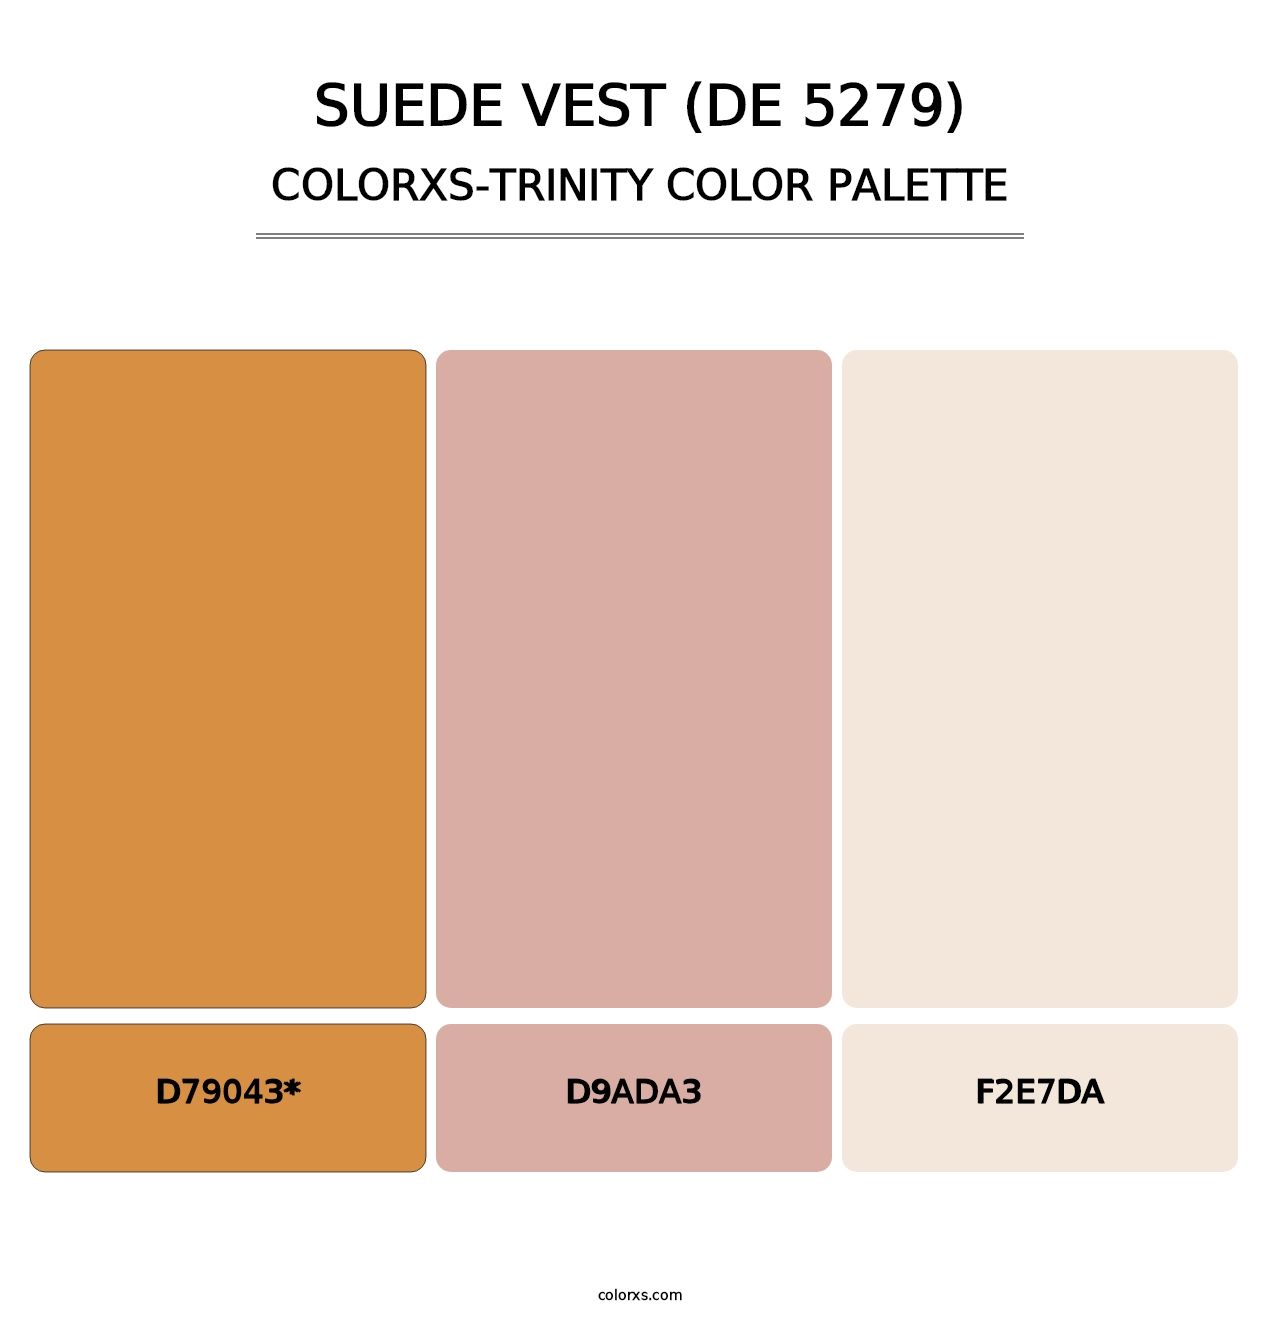 Suede Vest (DE 5279) - Colorxs Trinity Palette